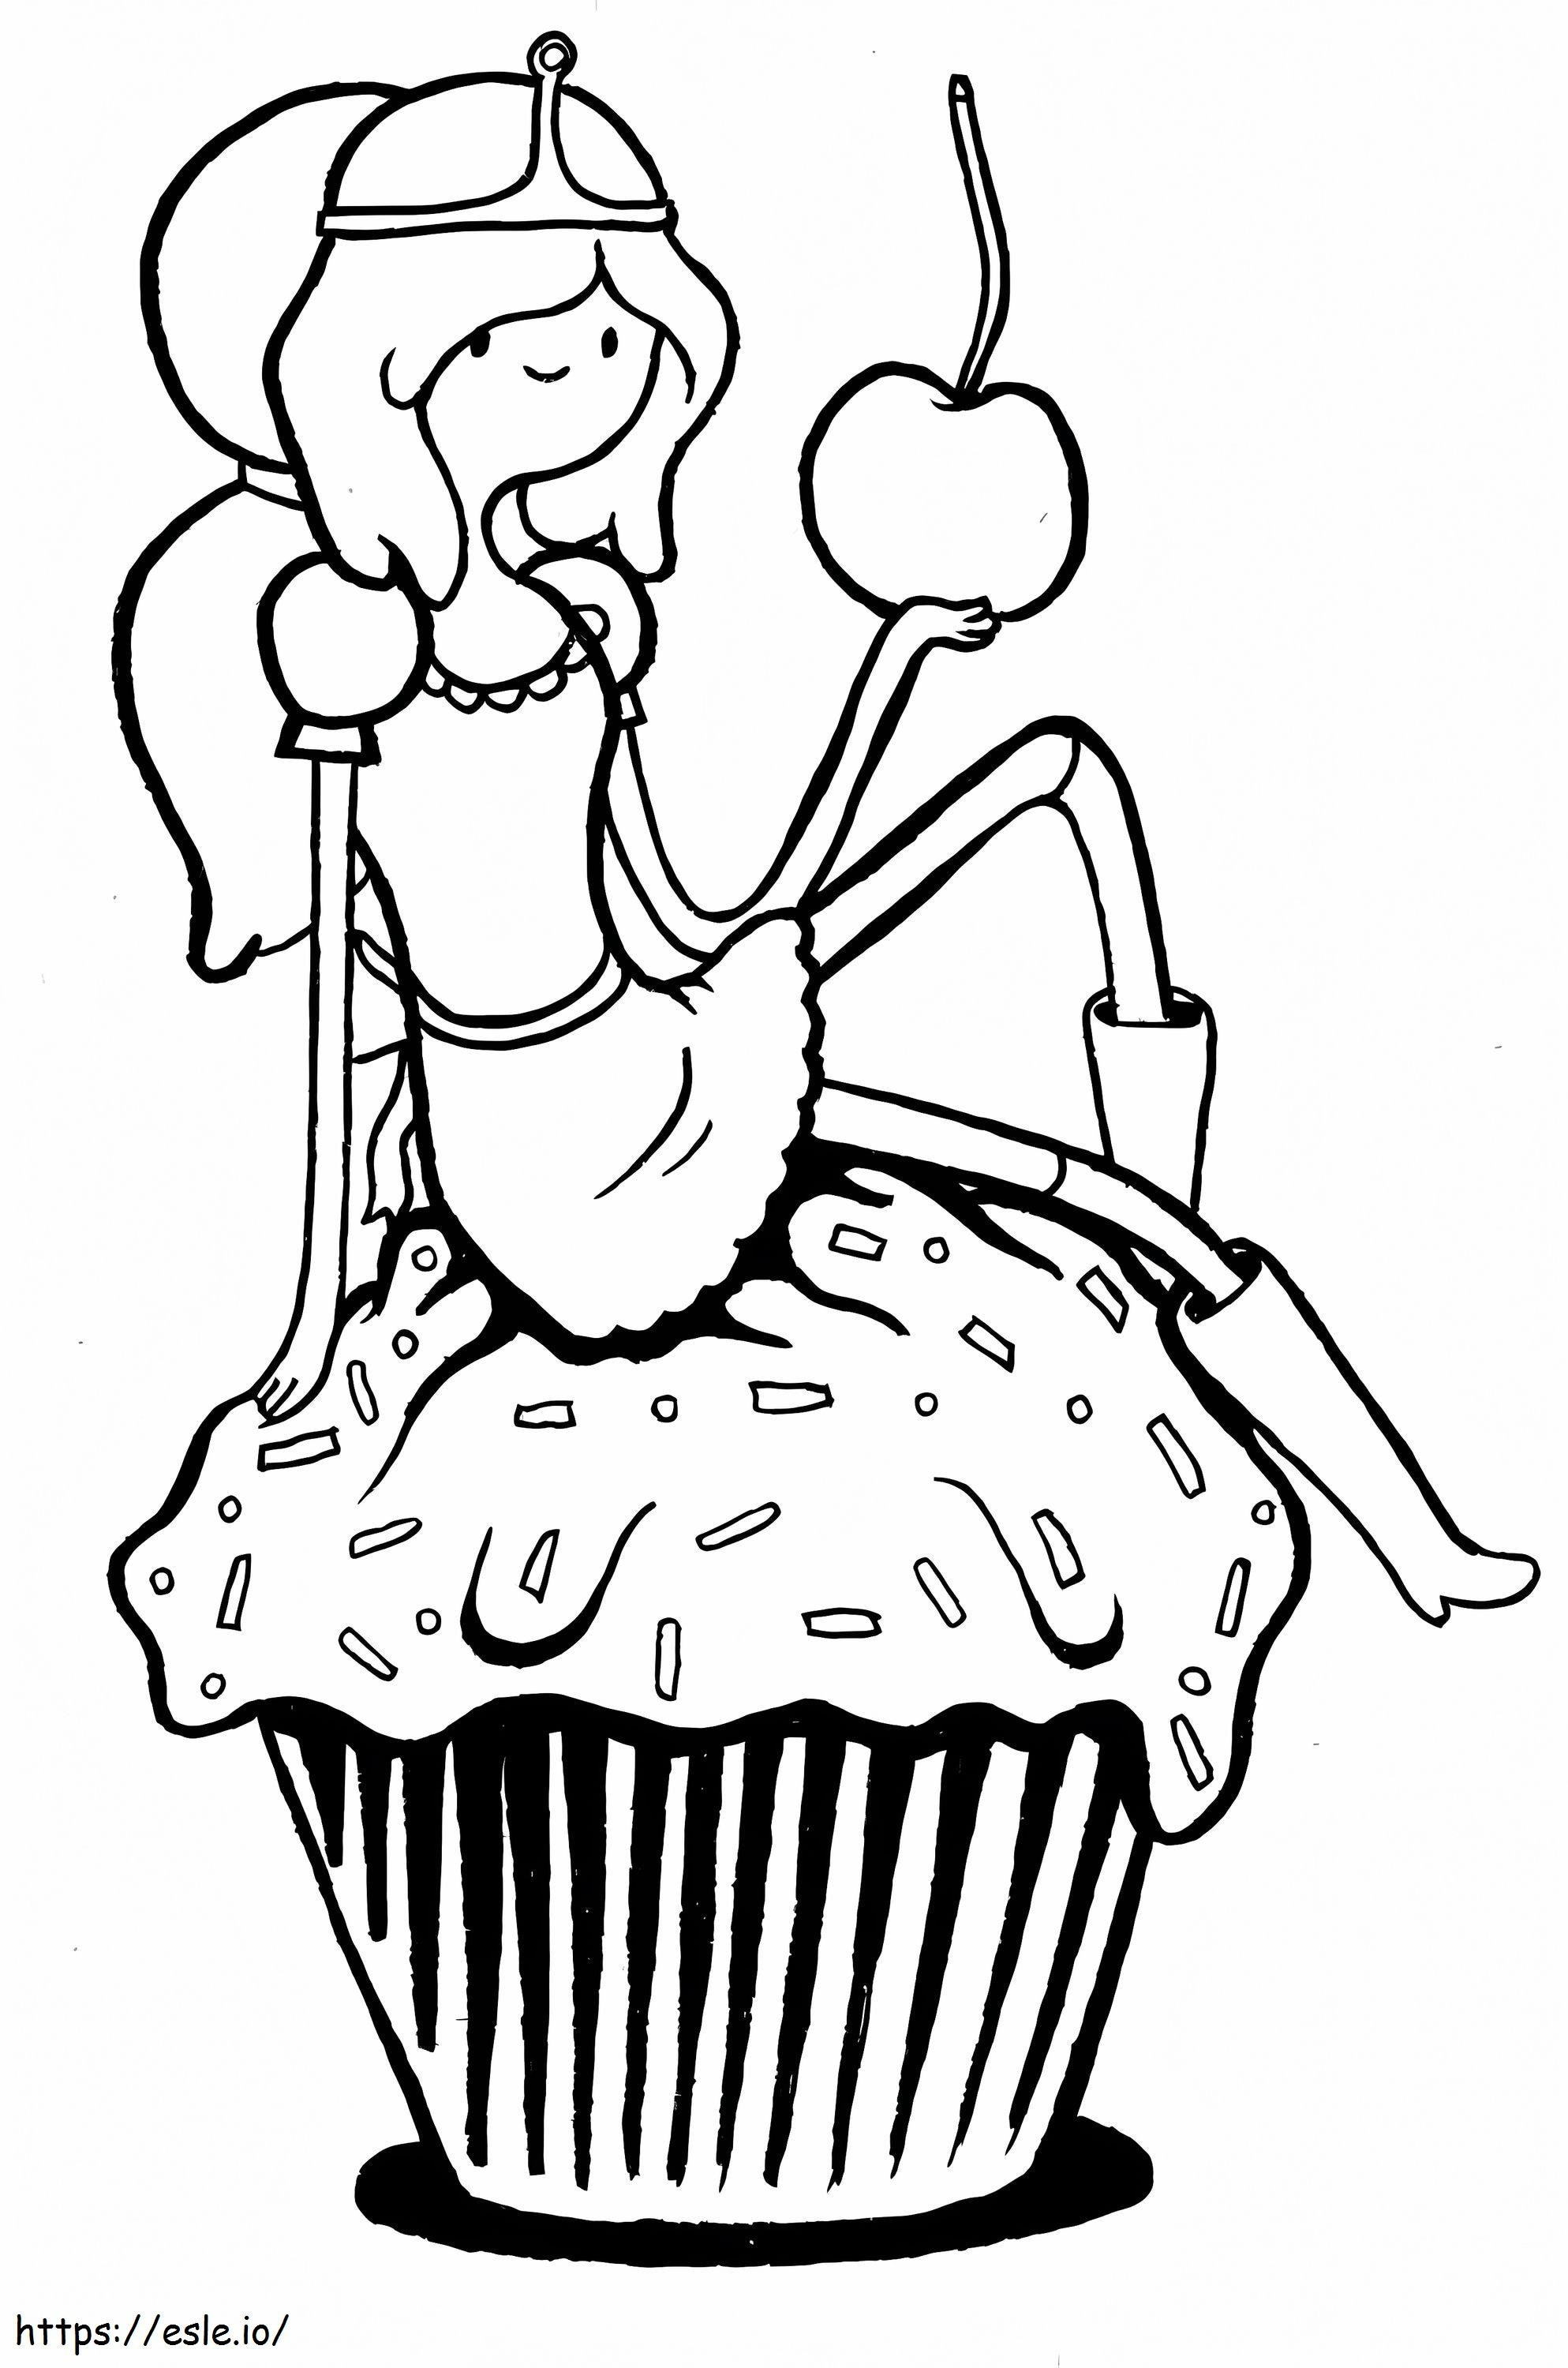 Prinses Bubblegum houdt de appel vast en gaat op de cupcake zitten kleurplaat kleurplaat